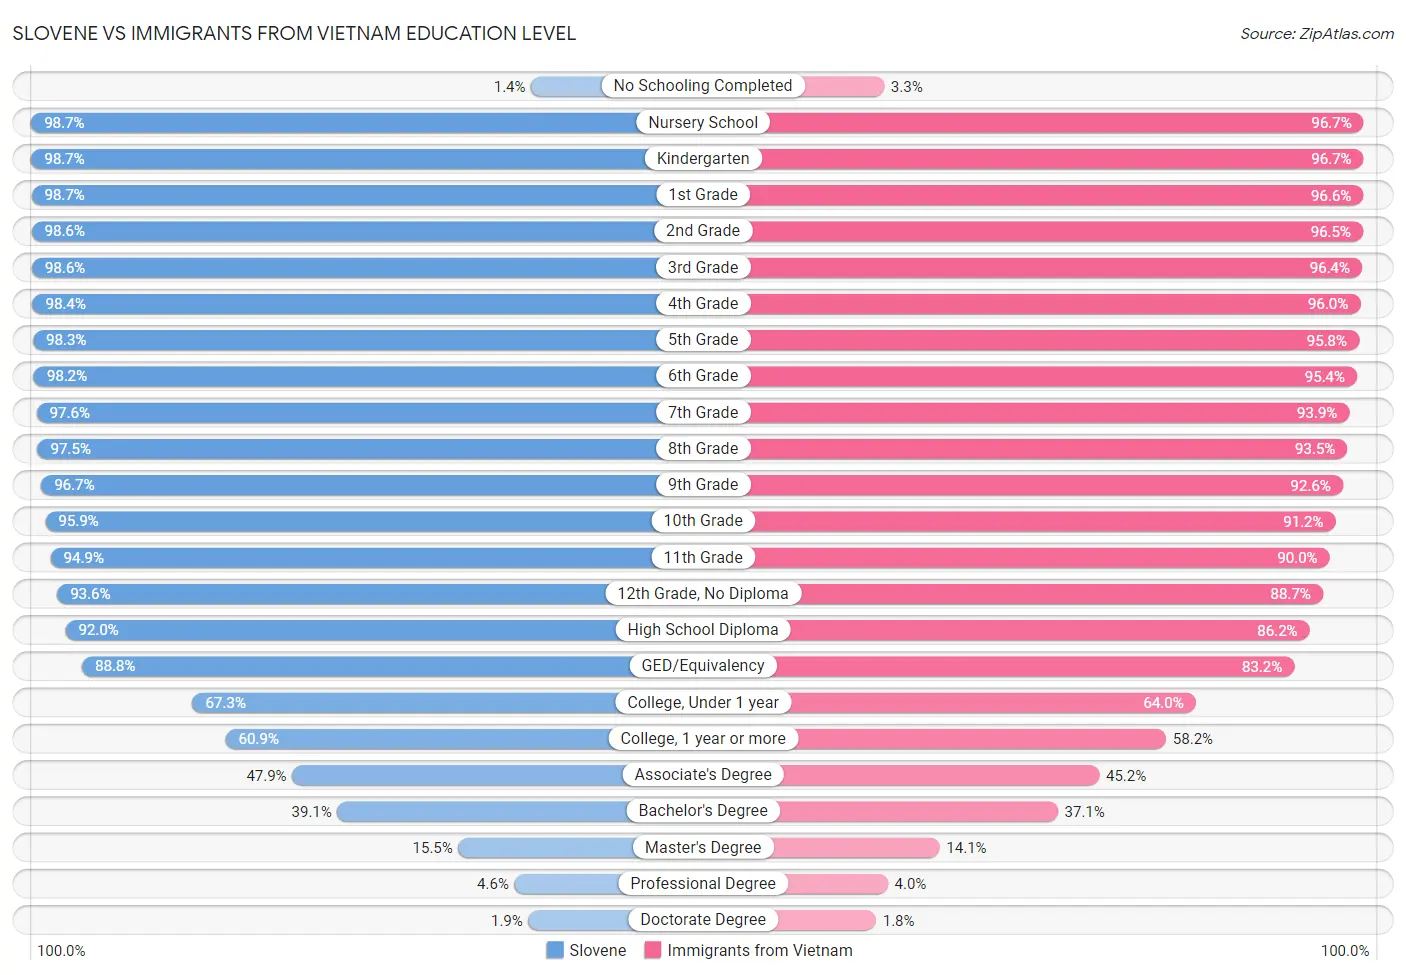 Slovene vs Immigrants from Vietnam Education Level